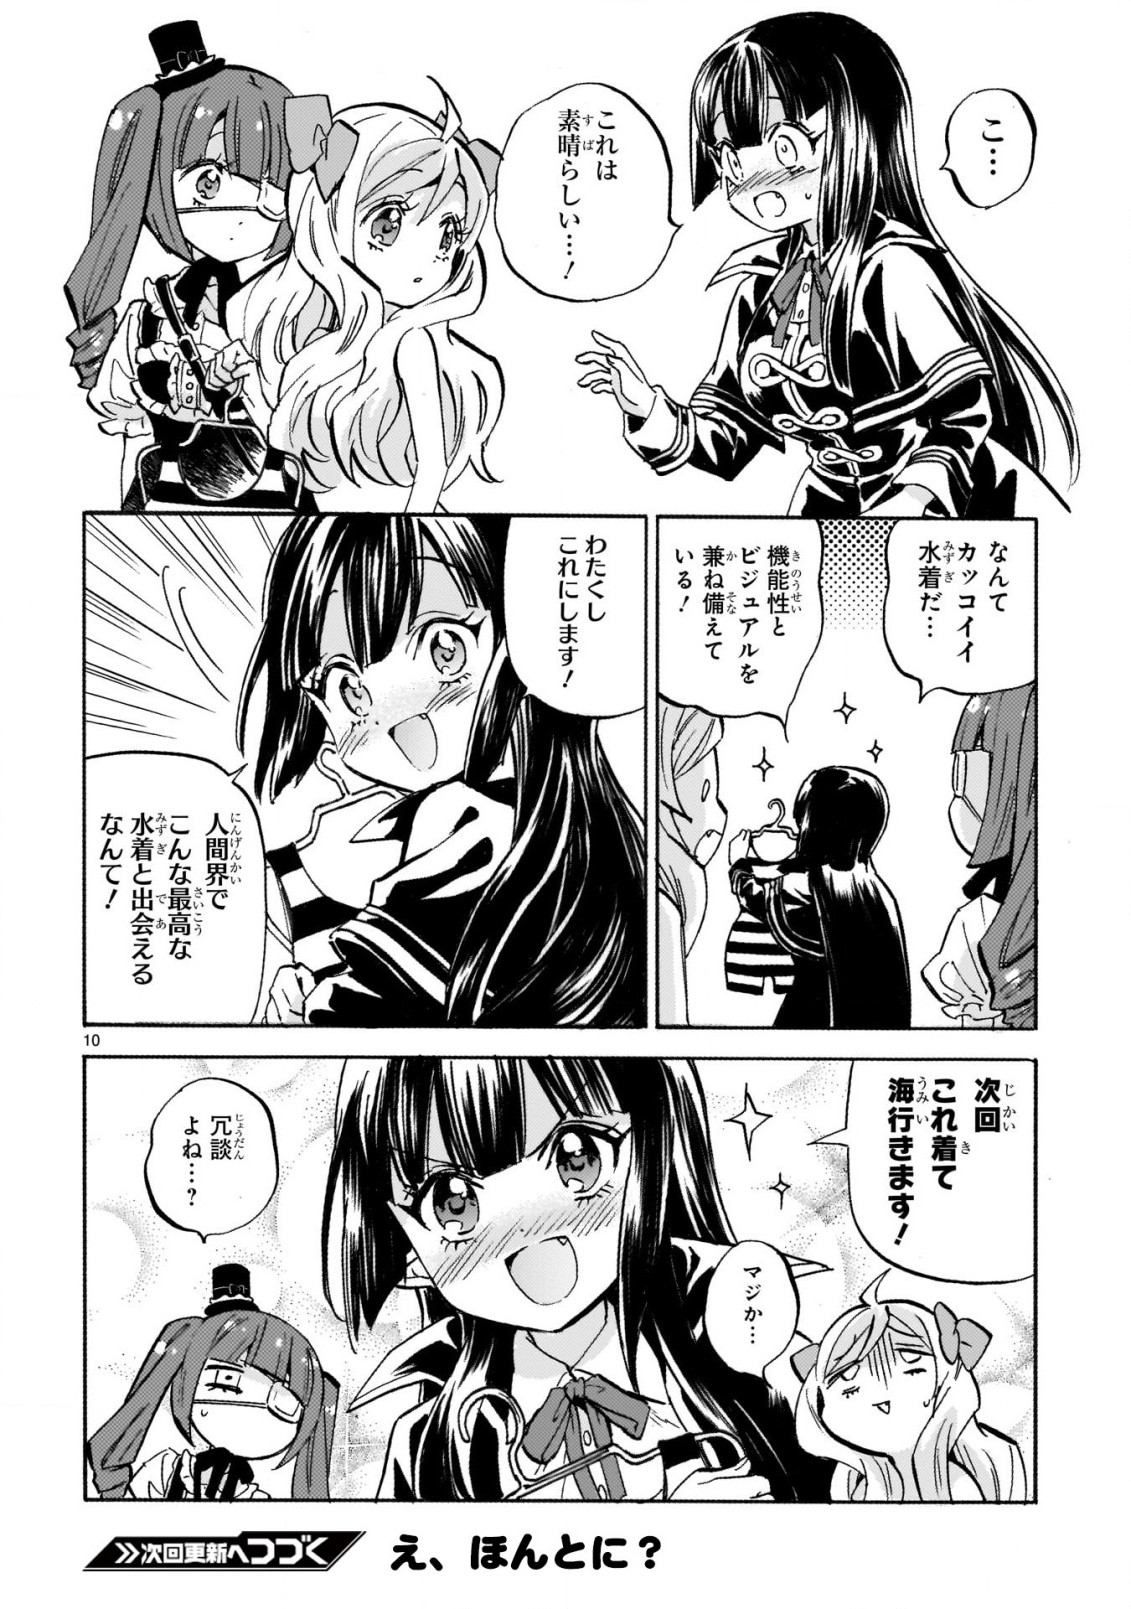 Jashin-chan Dropkick - Chapter 237 - Page 10